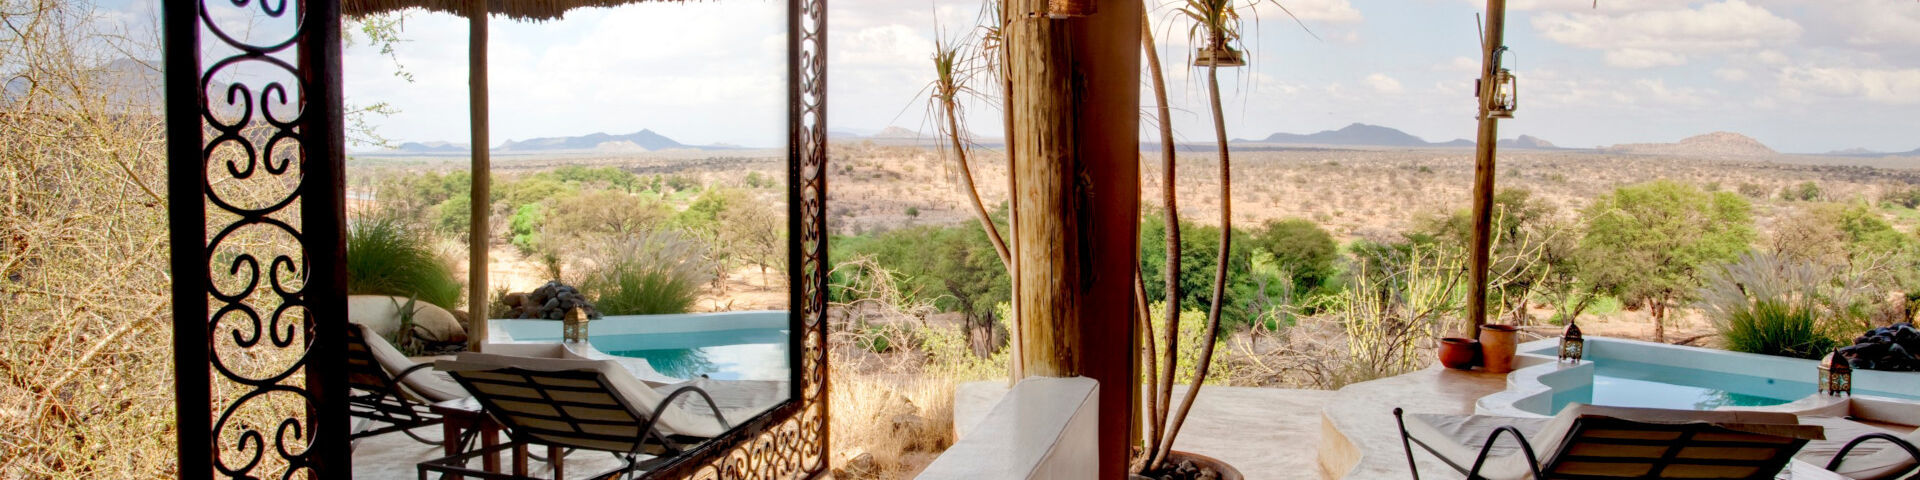 Sasaab Lodge - Samburu National Park - Kenya